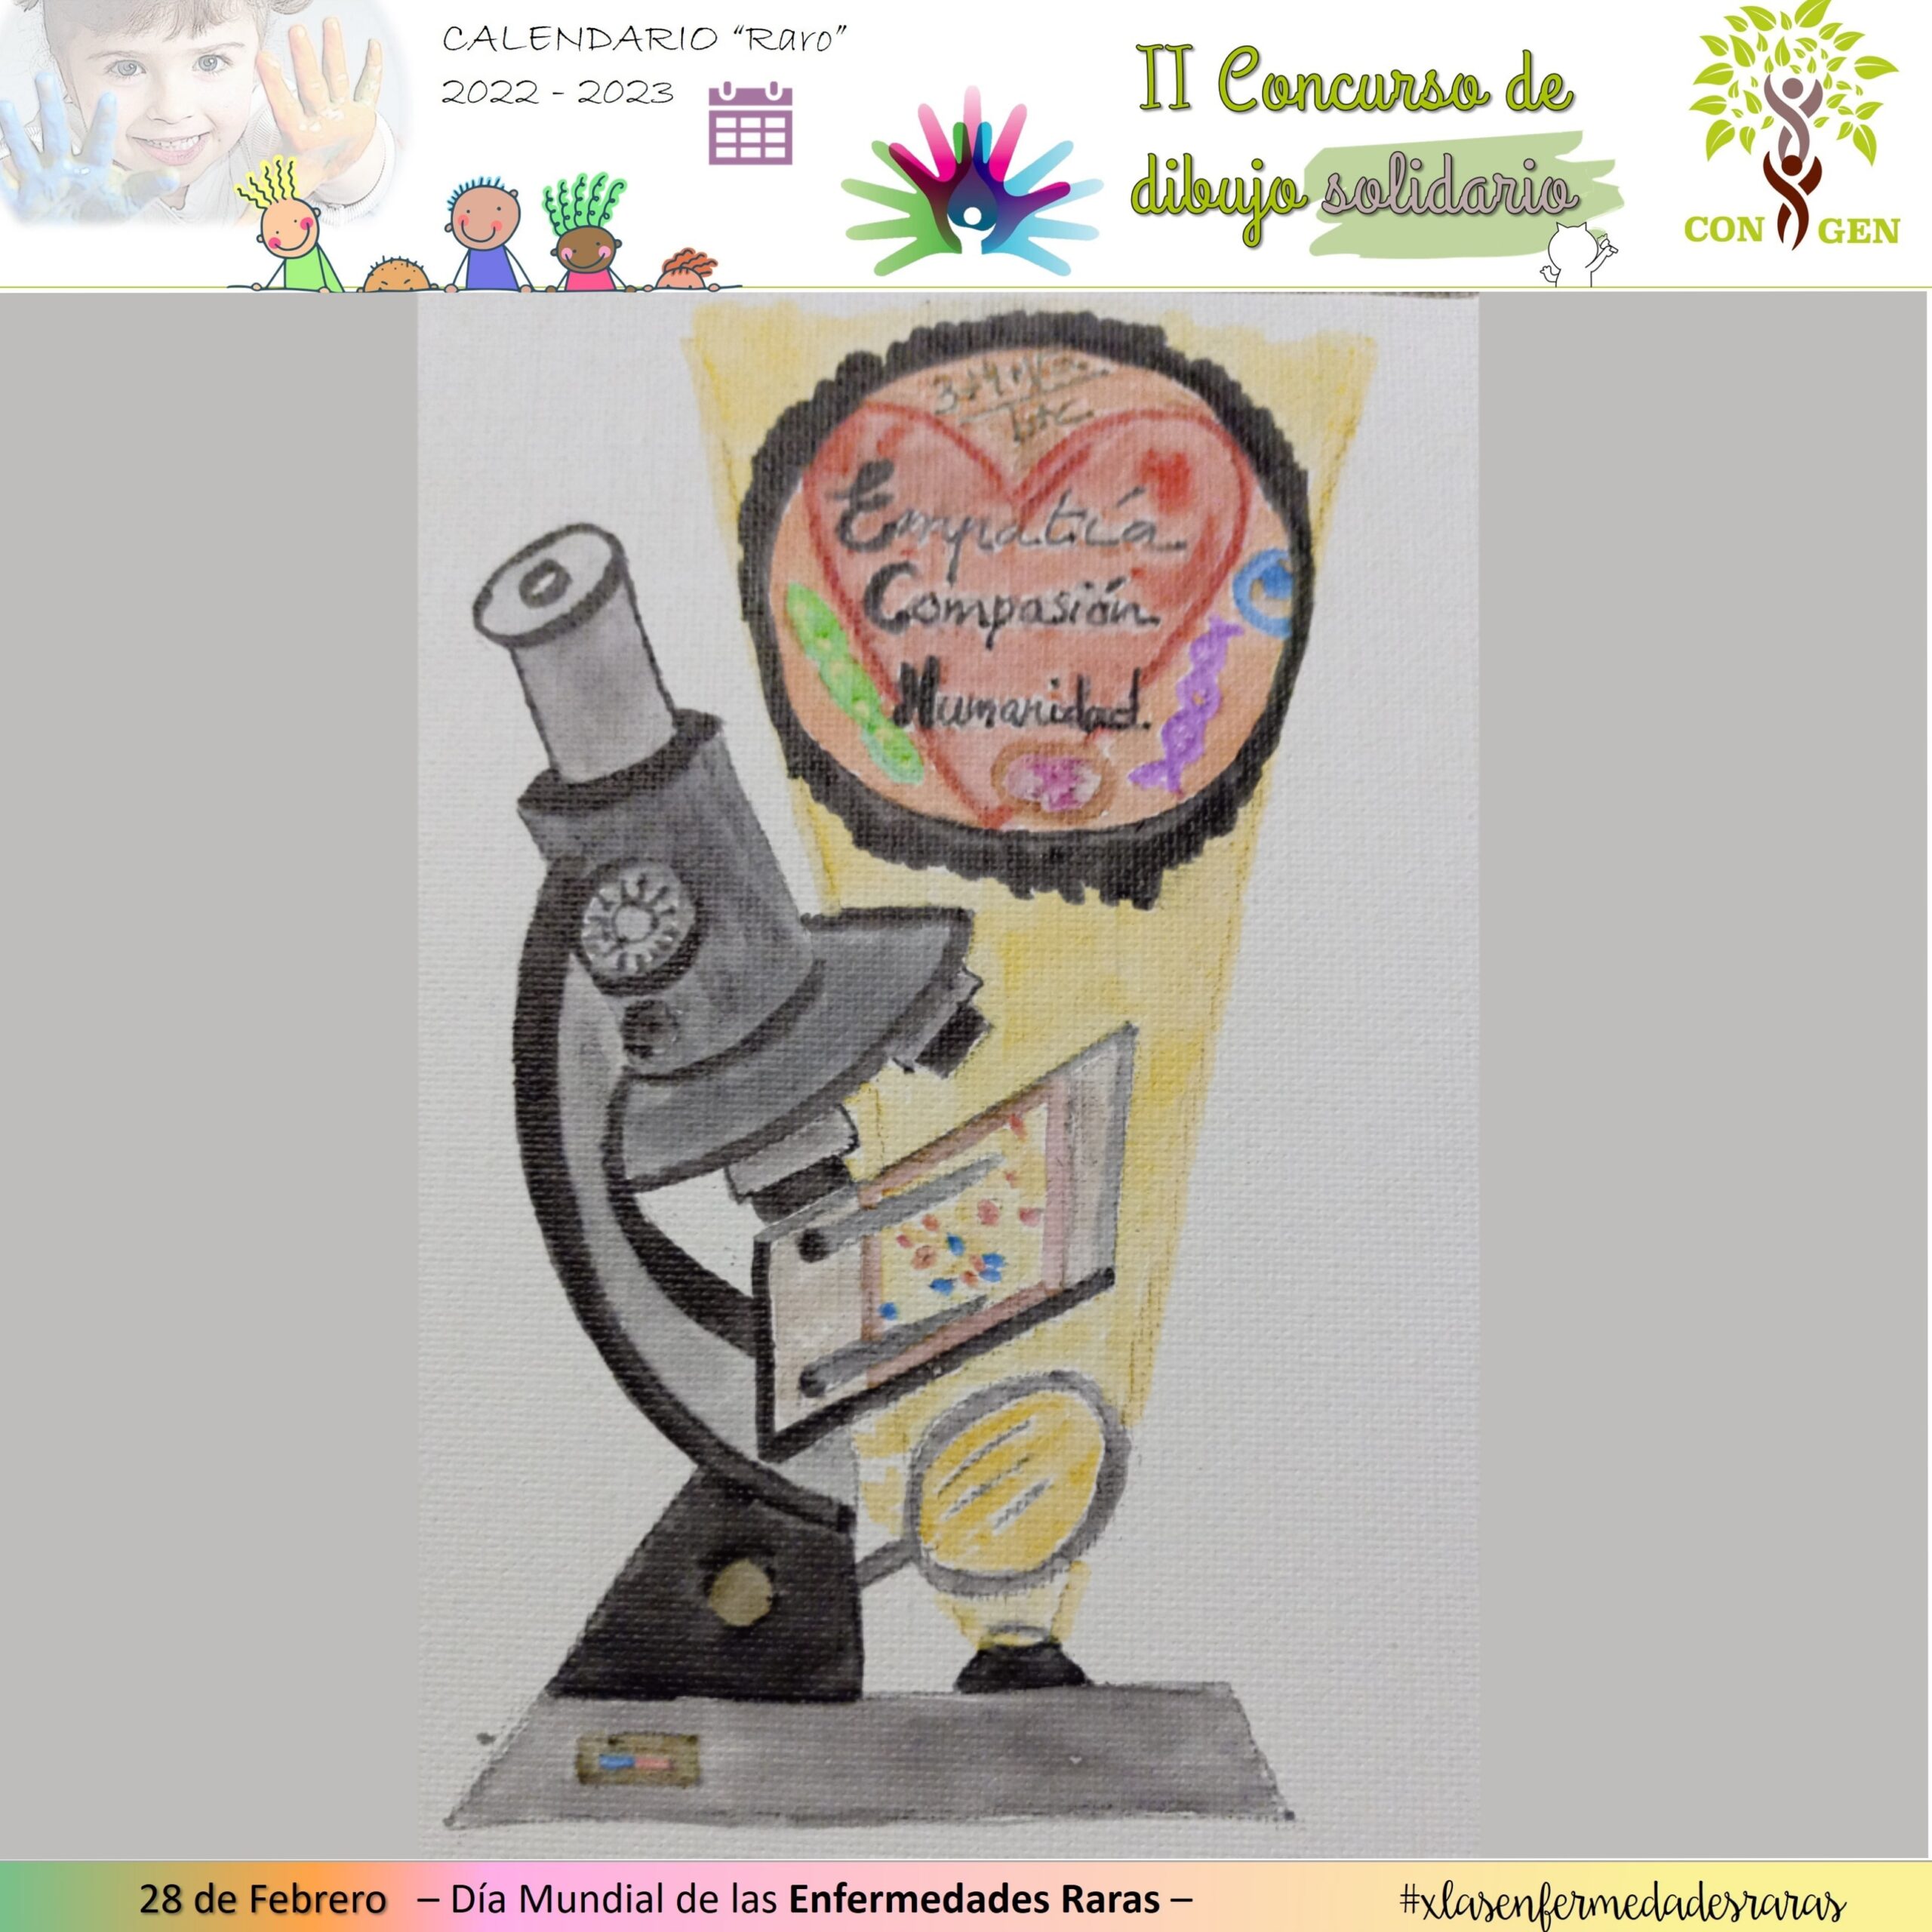 II Concurso de Dibujo Solidario - Congen